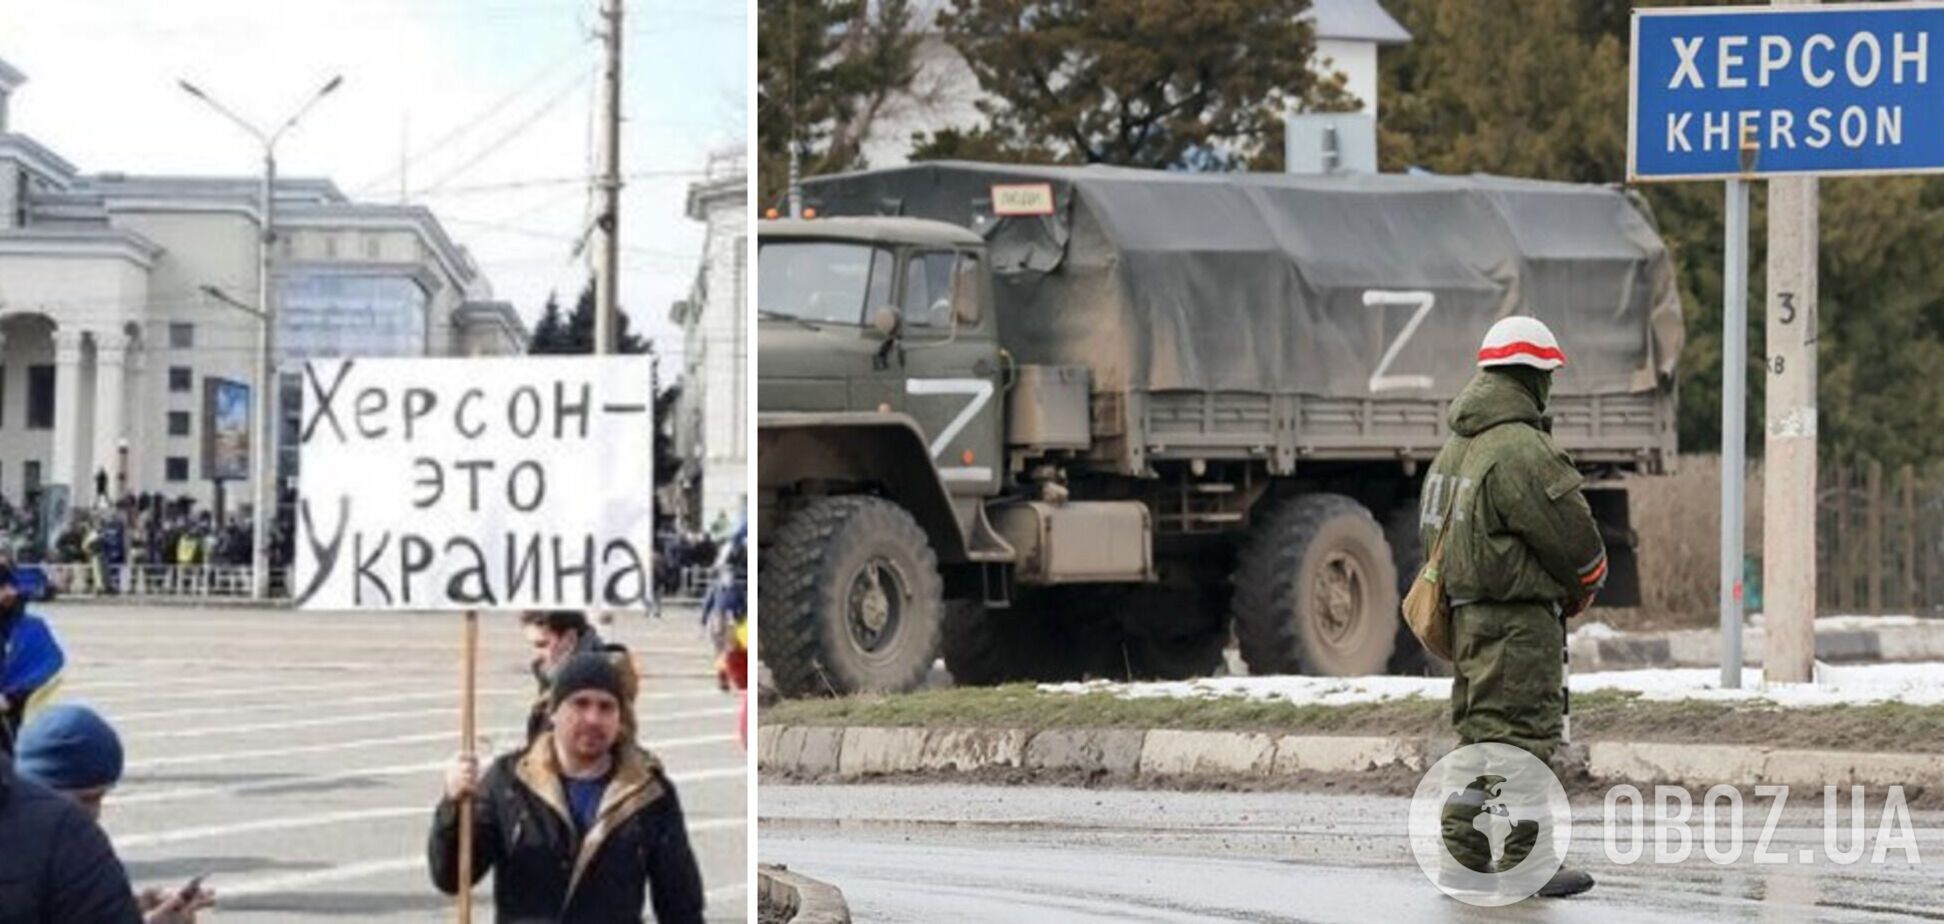 'Прятали оружие под одеждой': оккупант признался, что боялся расправы жителей Херсонщины